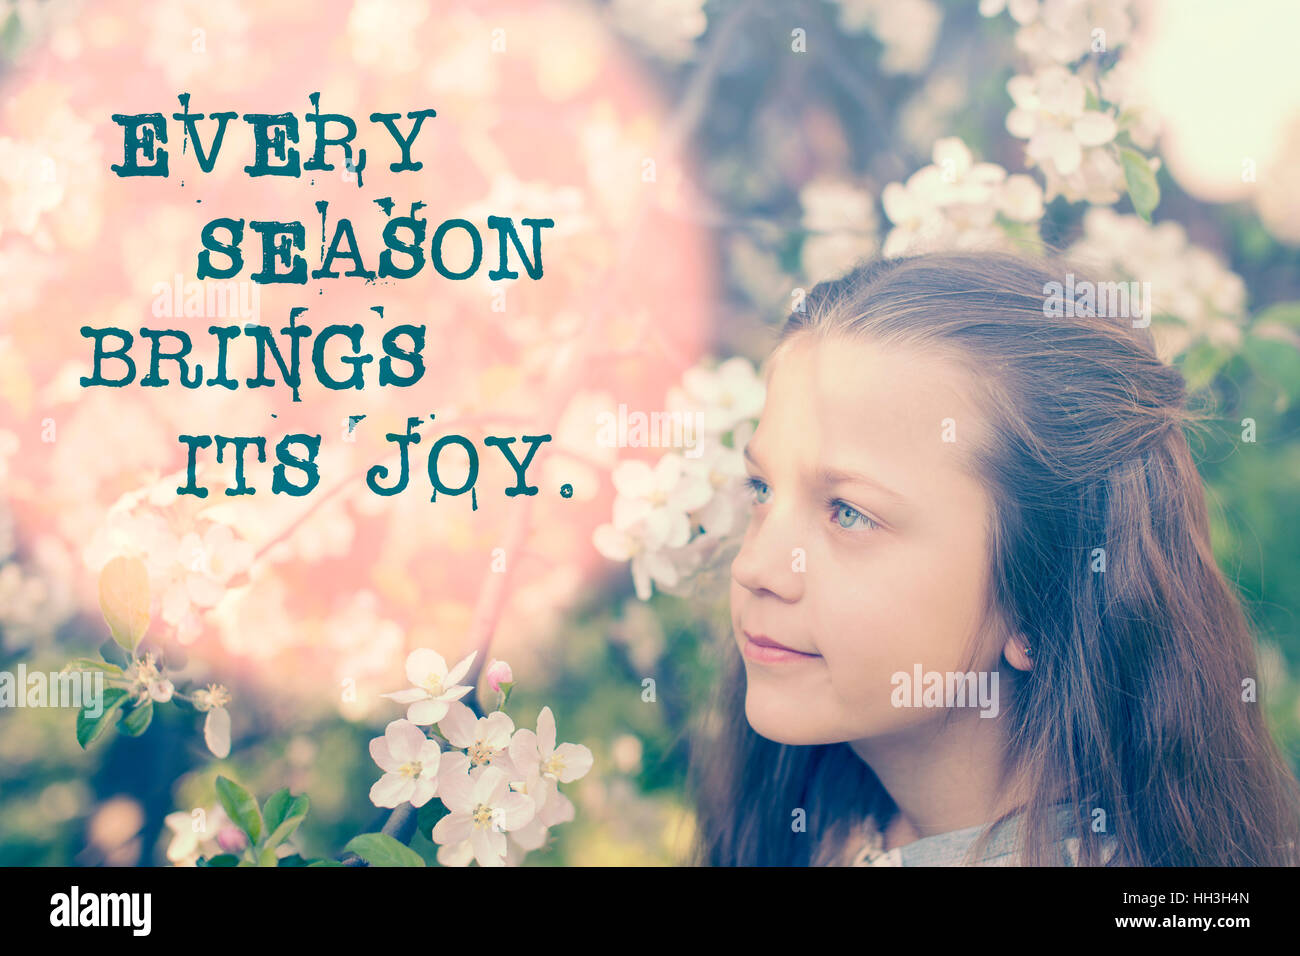 jede Jahreszeit bringt ihre Freude Sprichwort auf Bild mit Kind Mädchen in der Nähe von Apfelbaum Blüte gedruckt Stockfoto